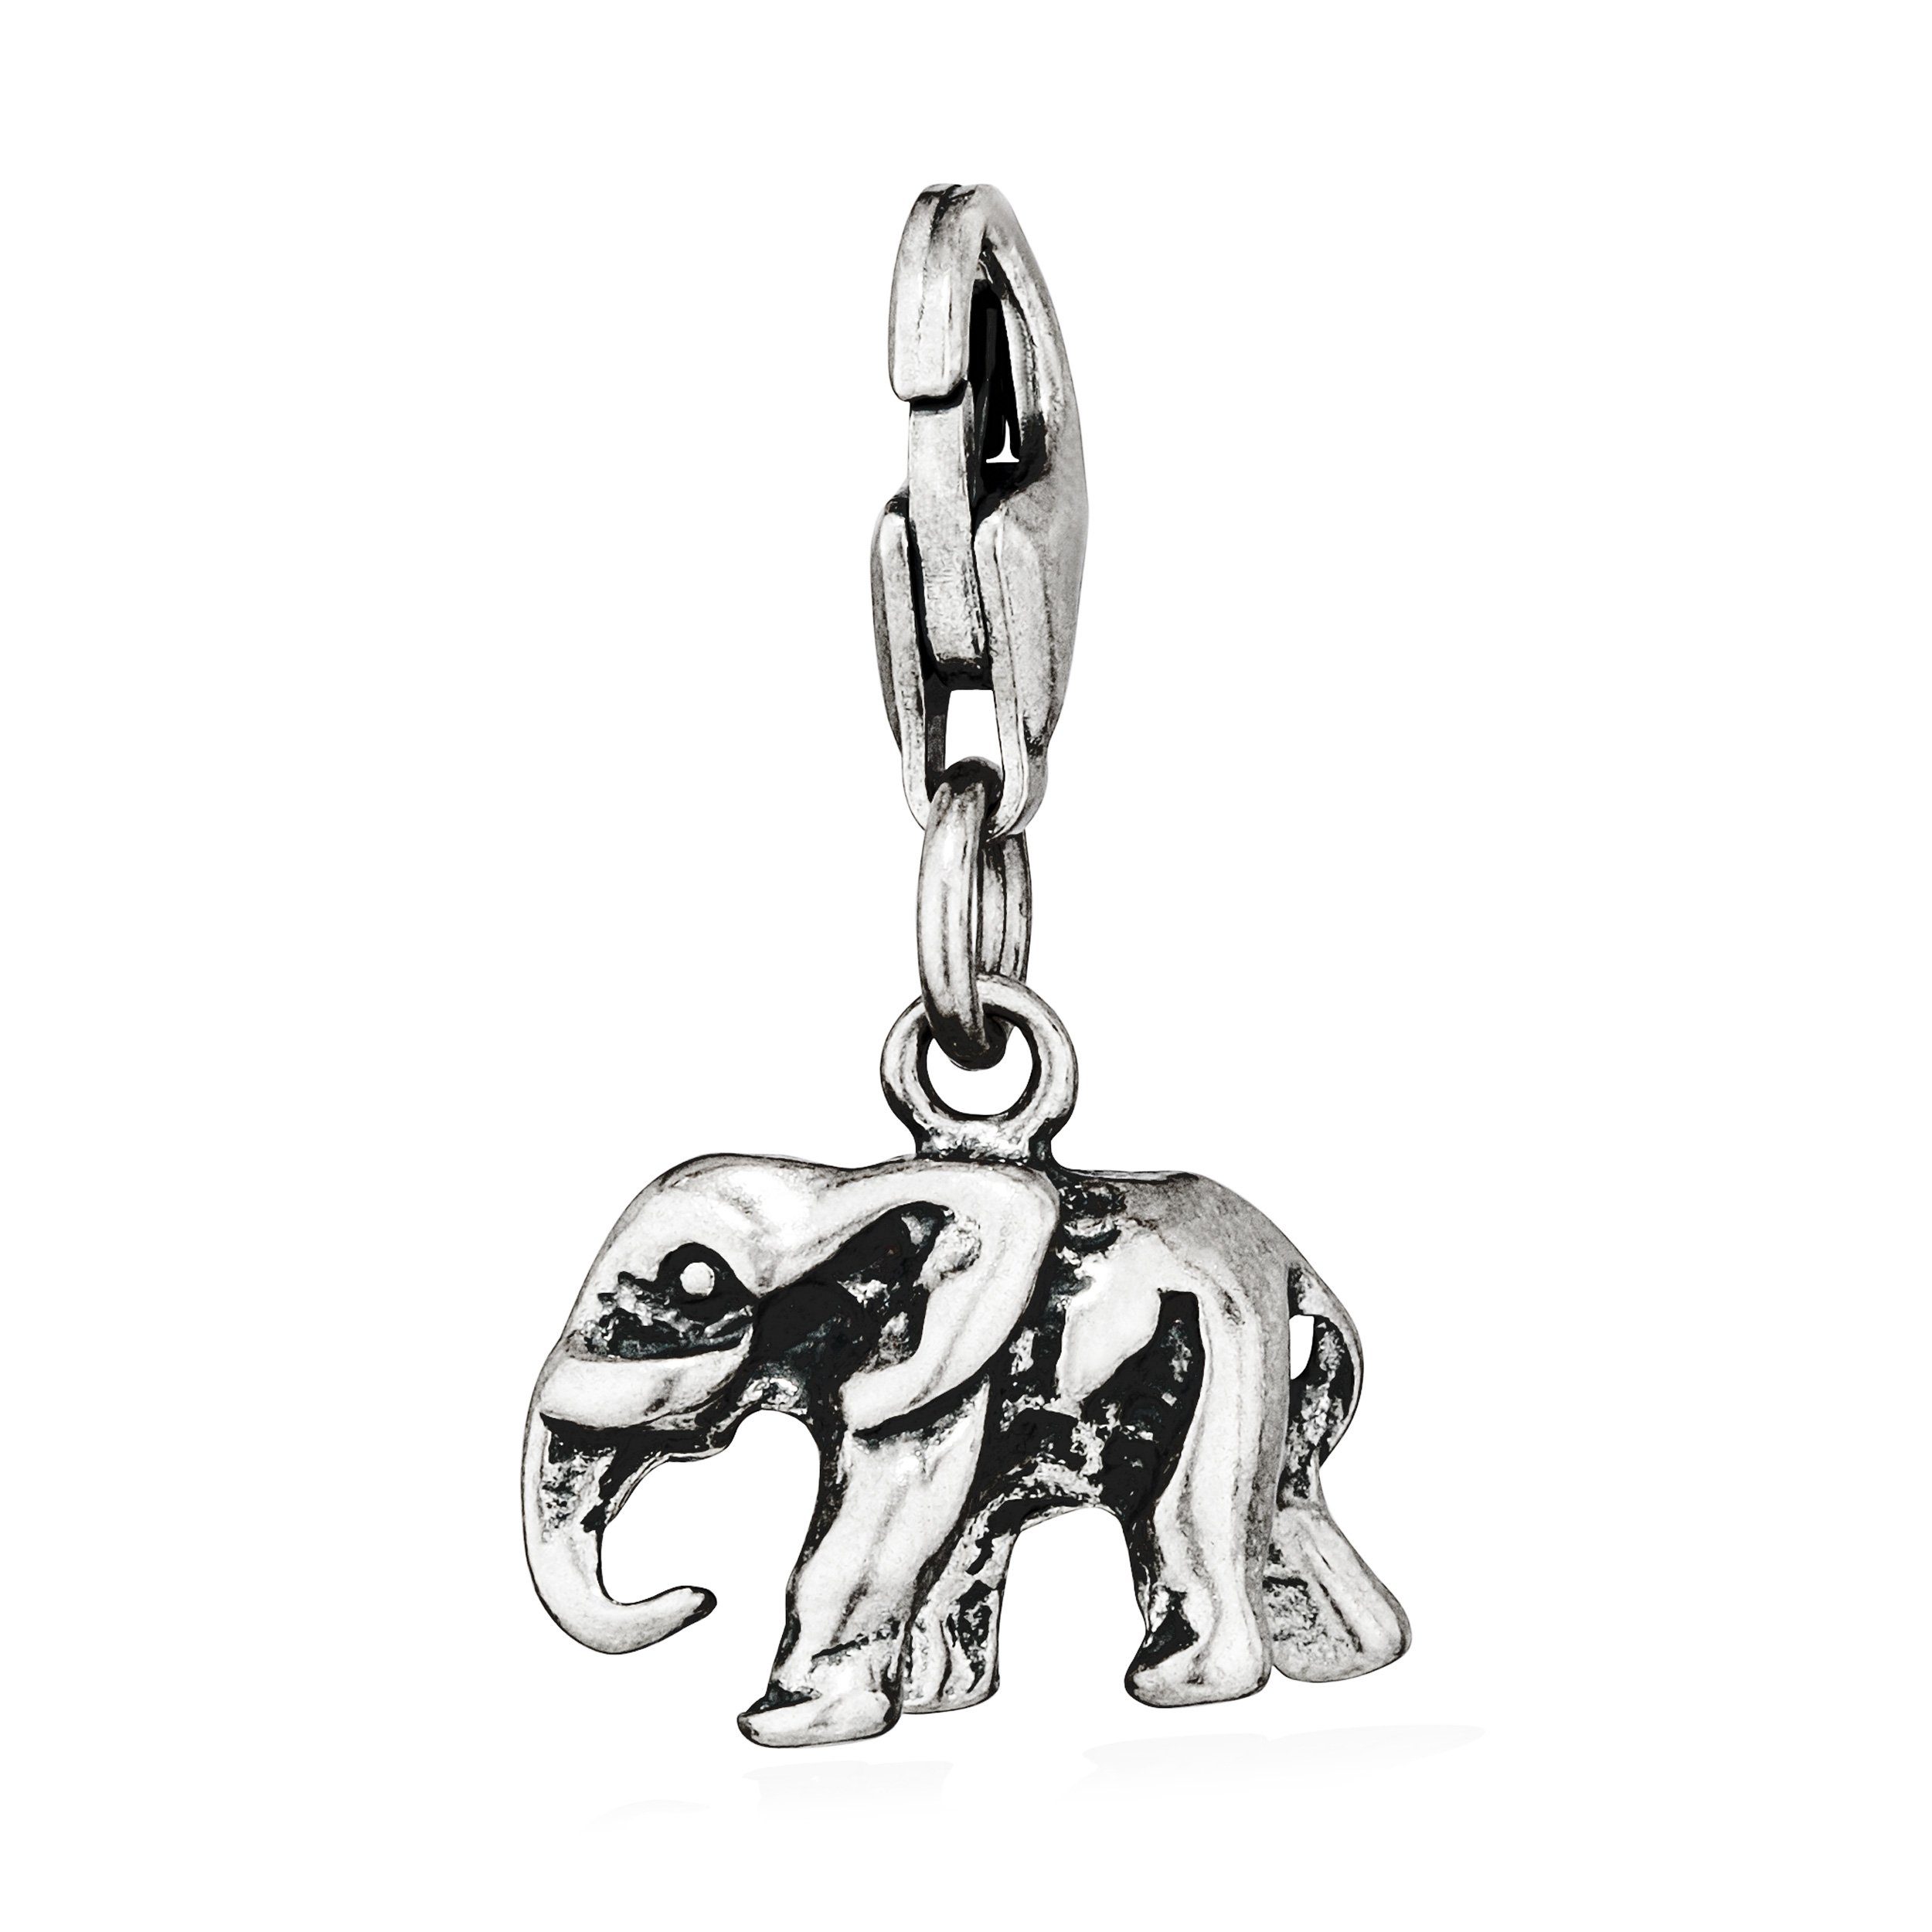 10x13mm Silber 925 A antik Charm-Anhänger NKlaus Kettenanhänger Silberanhänger klein Elefant